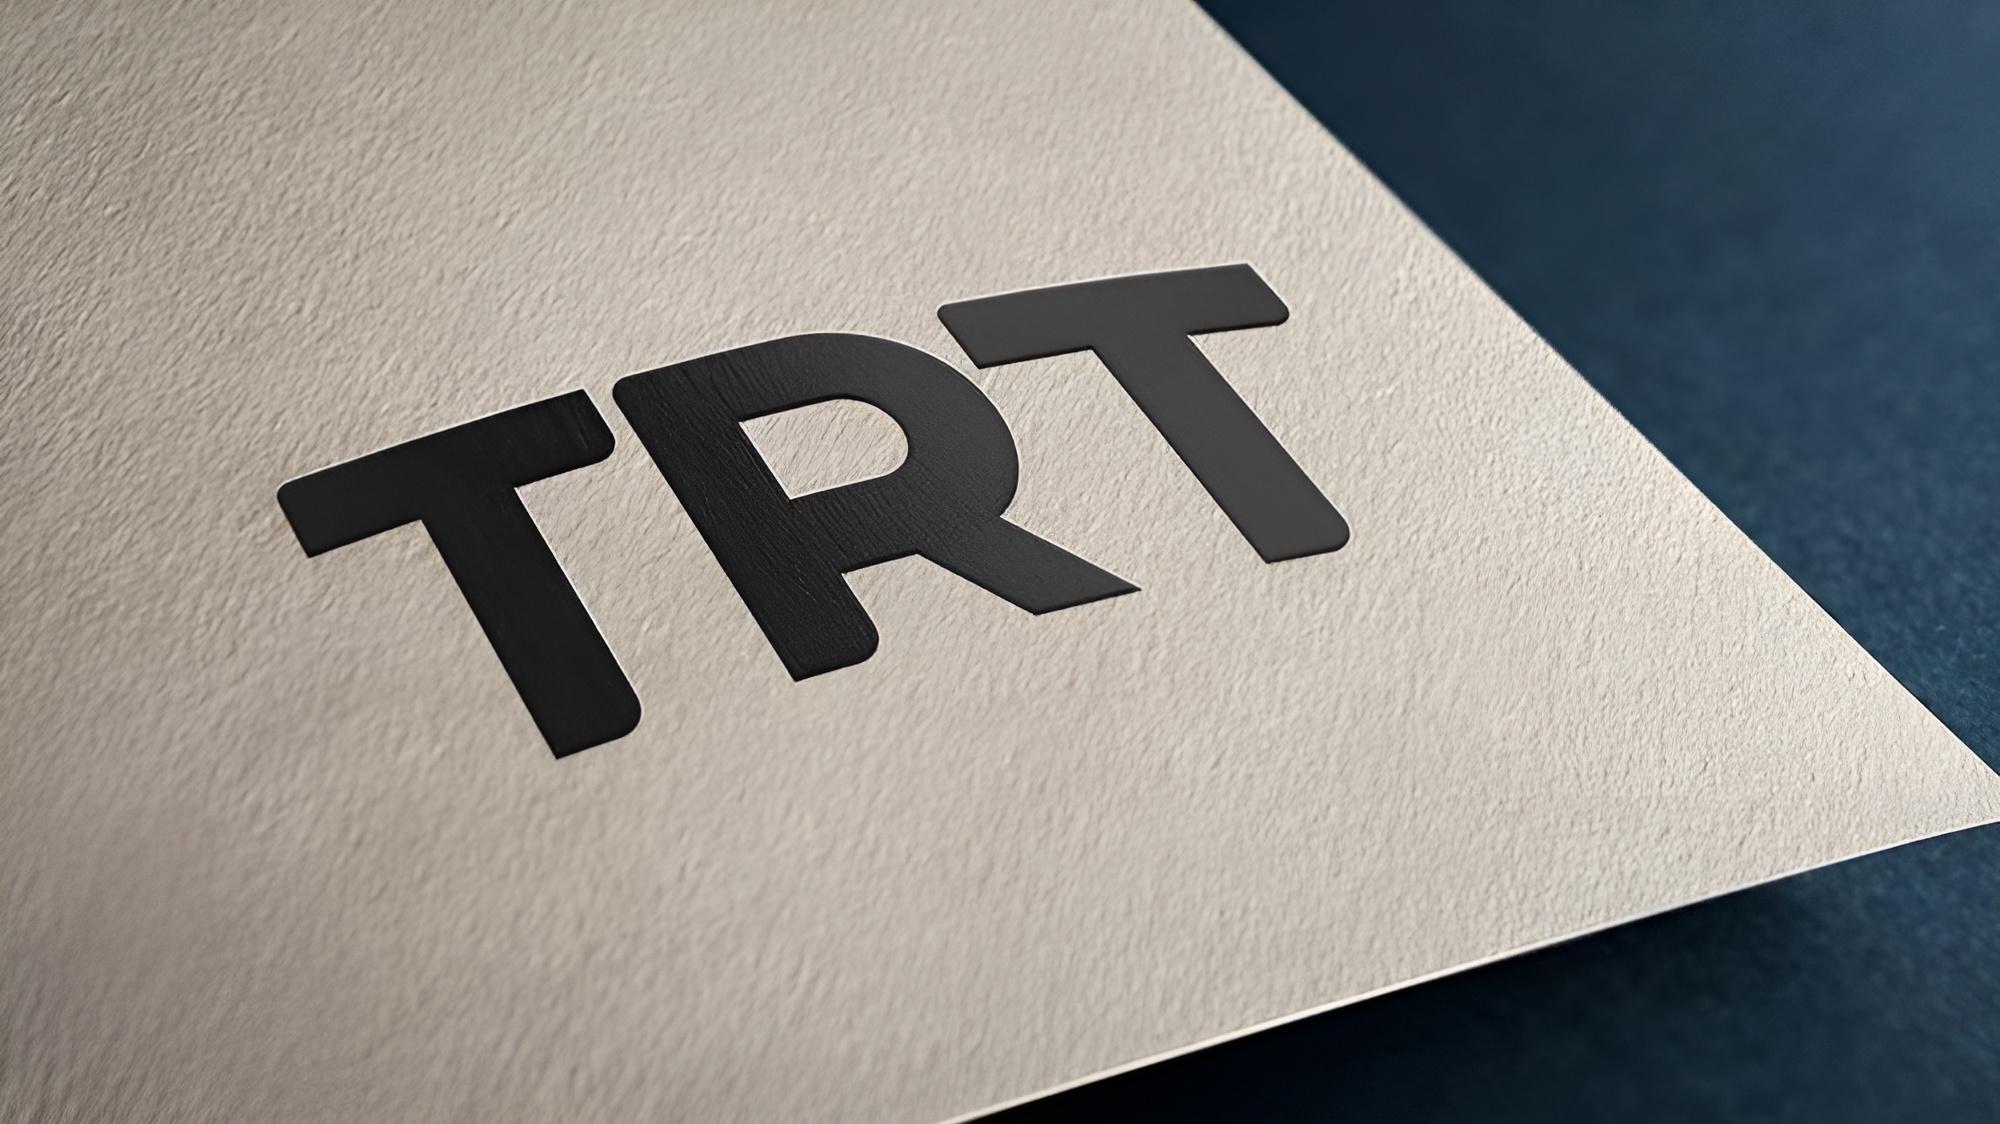 TRT İspanyolca Dijital Kanalı Geliyor! - ShiftDetele.net